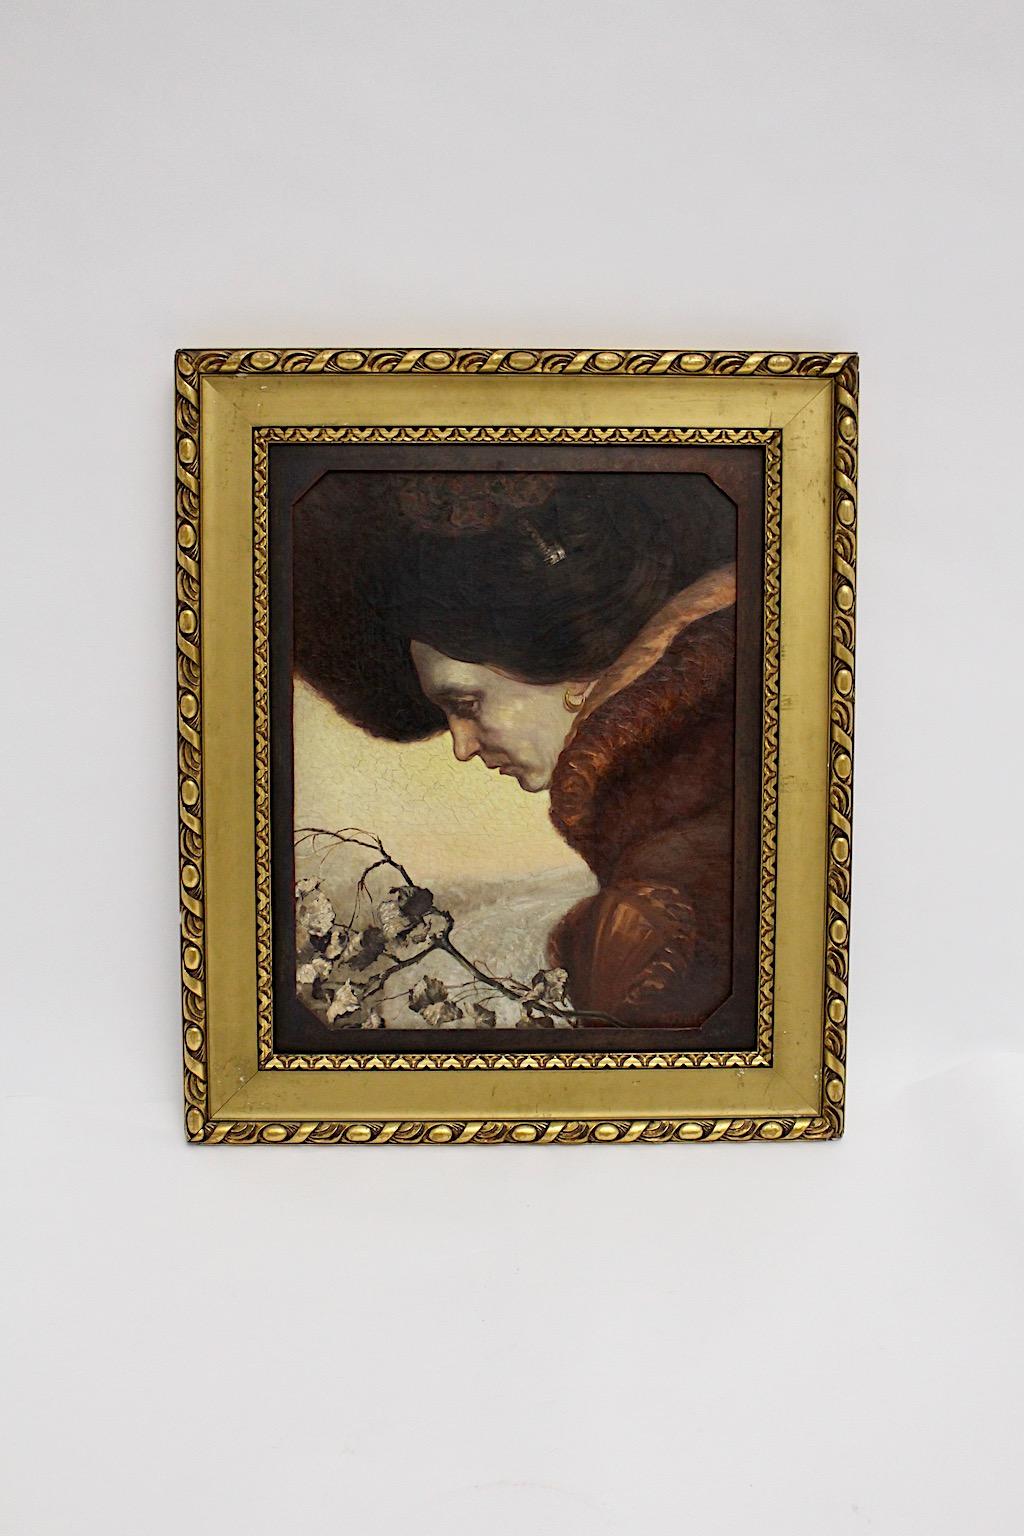 Portrait féminin vintage Jugendstil, huile sur toile d'Emil Fiala, Vienne, 1919.
Cette peinture poétique à l'huile sur toile représente un portrait féminin avec chapeau de la femme du peintre, Betty, à la fin de l'automne. 
Cette peinture étonnante